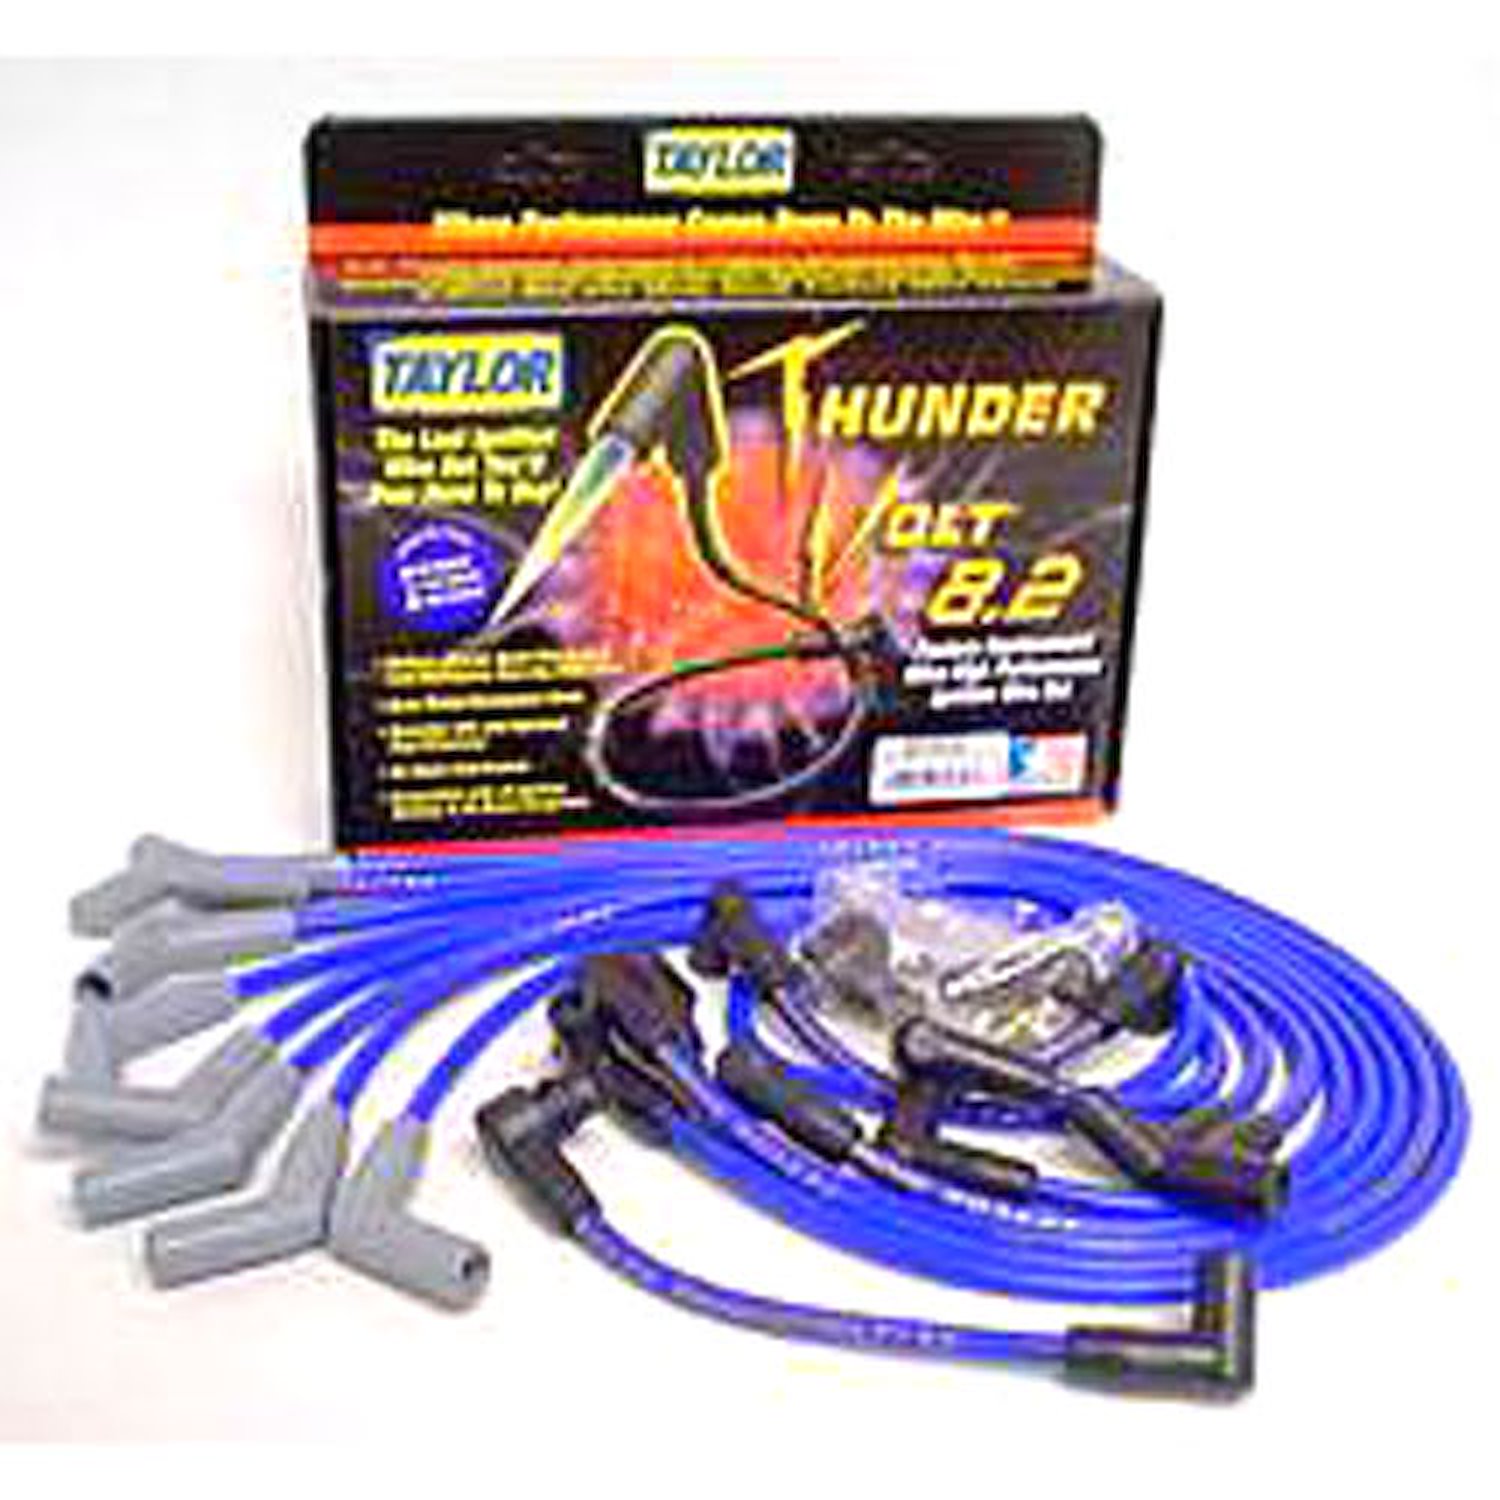 ThunderVolt 8.2mm Spark Plug Wires 1985-97 Ford 302-351